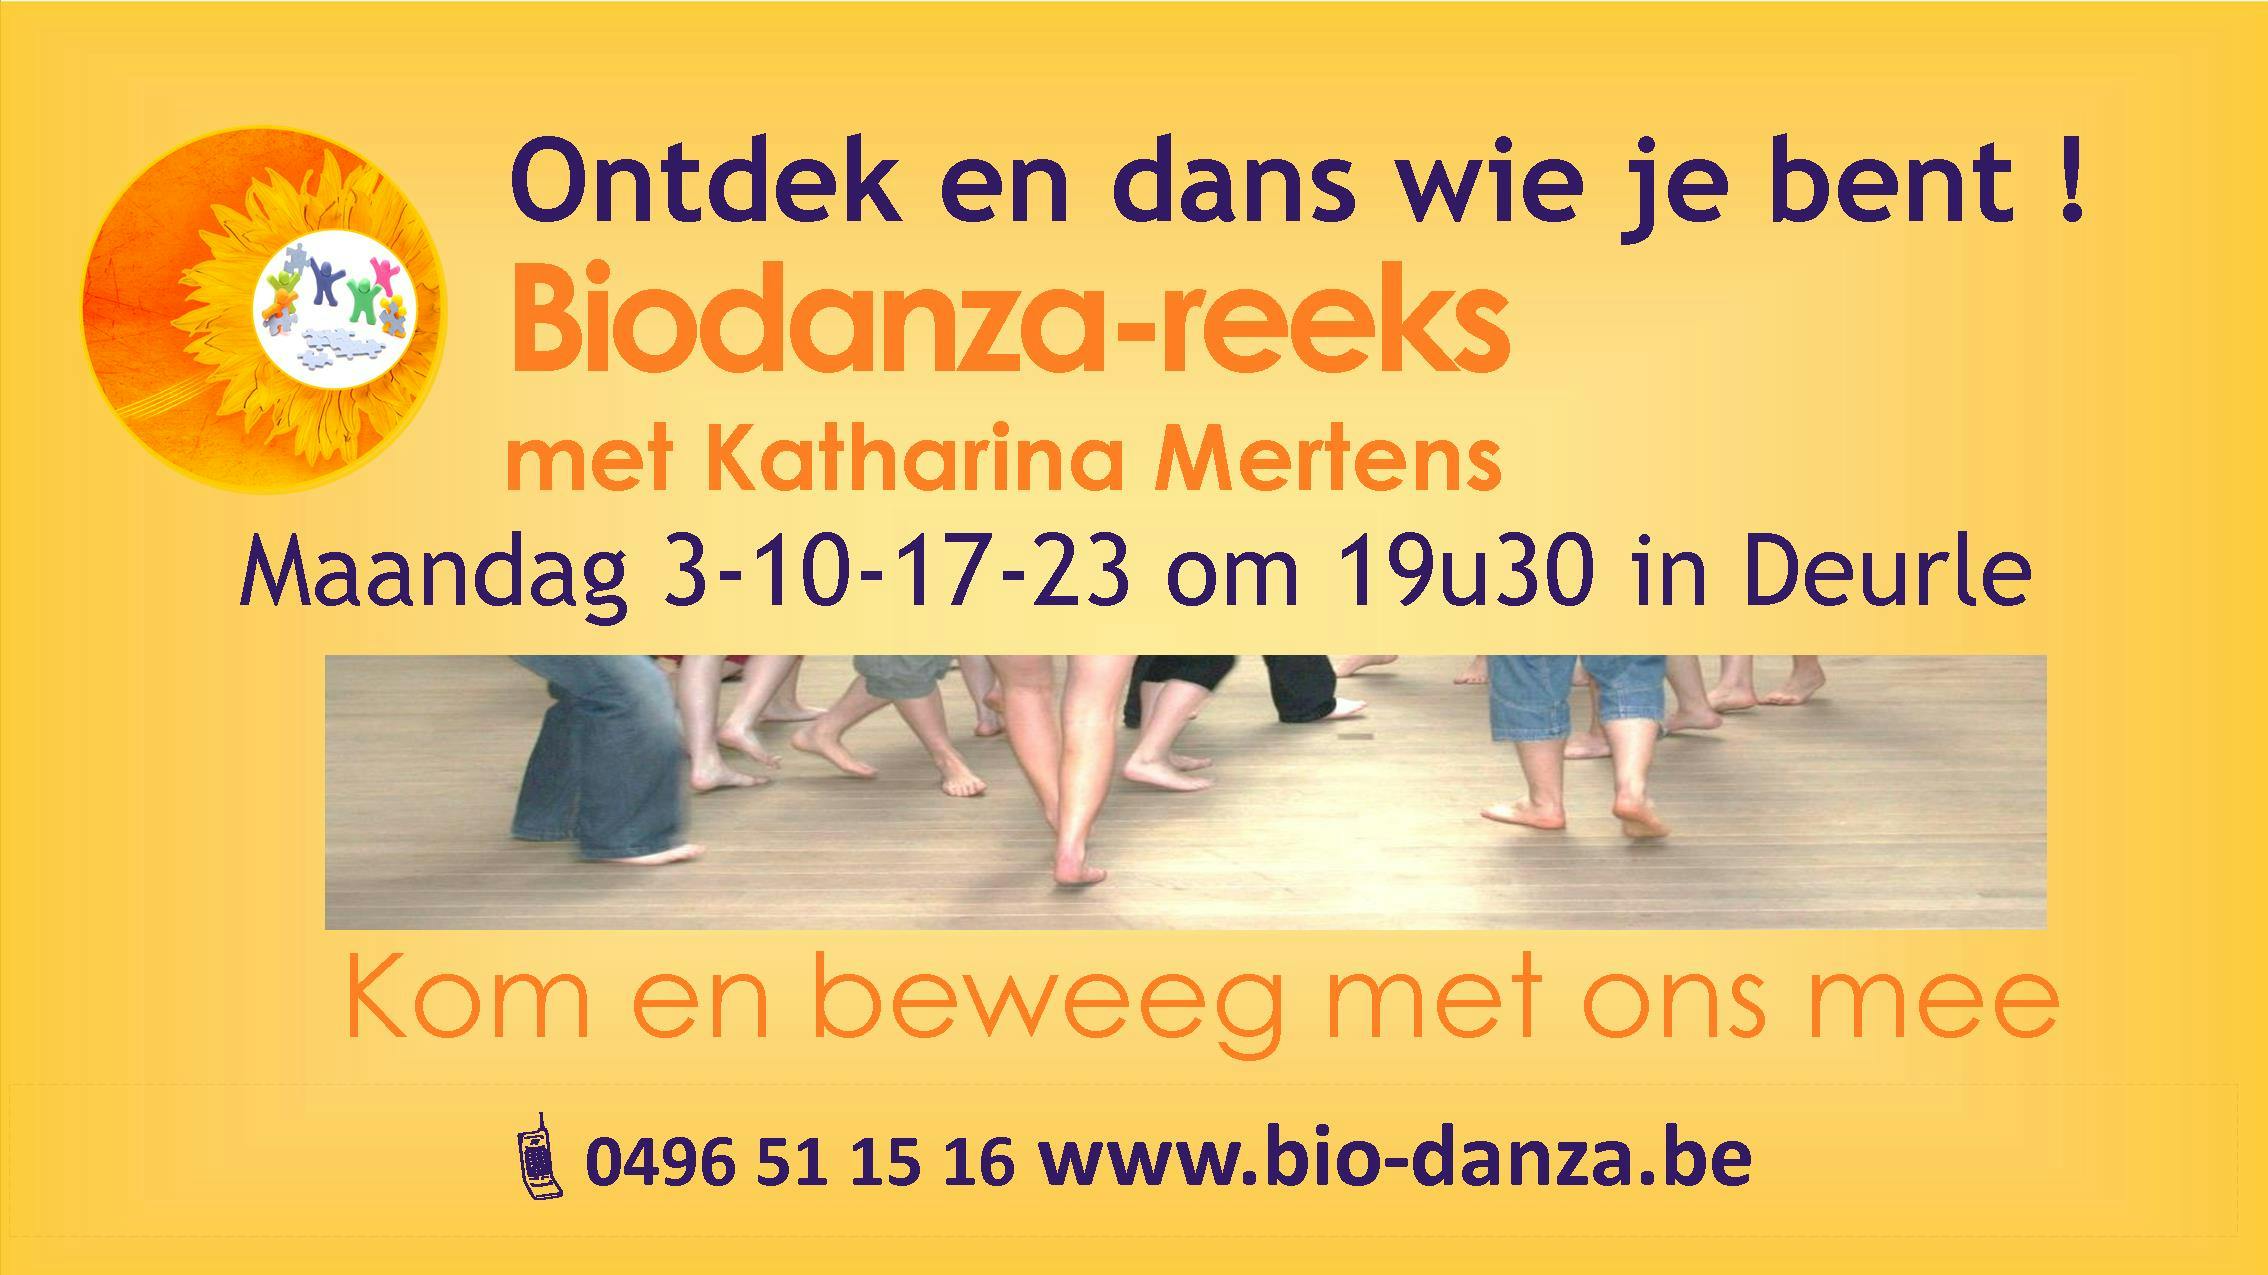 Biodanza reeks Deurle Sint-Martens-Latem